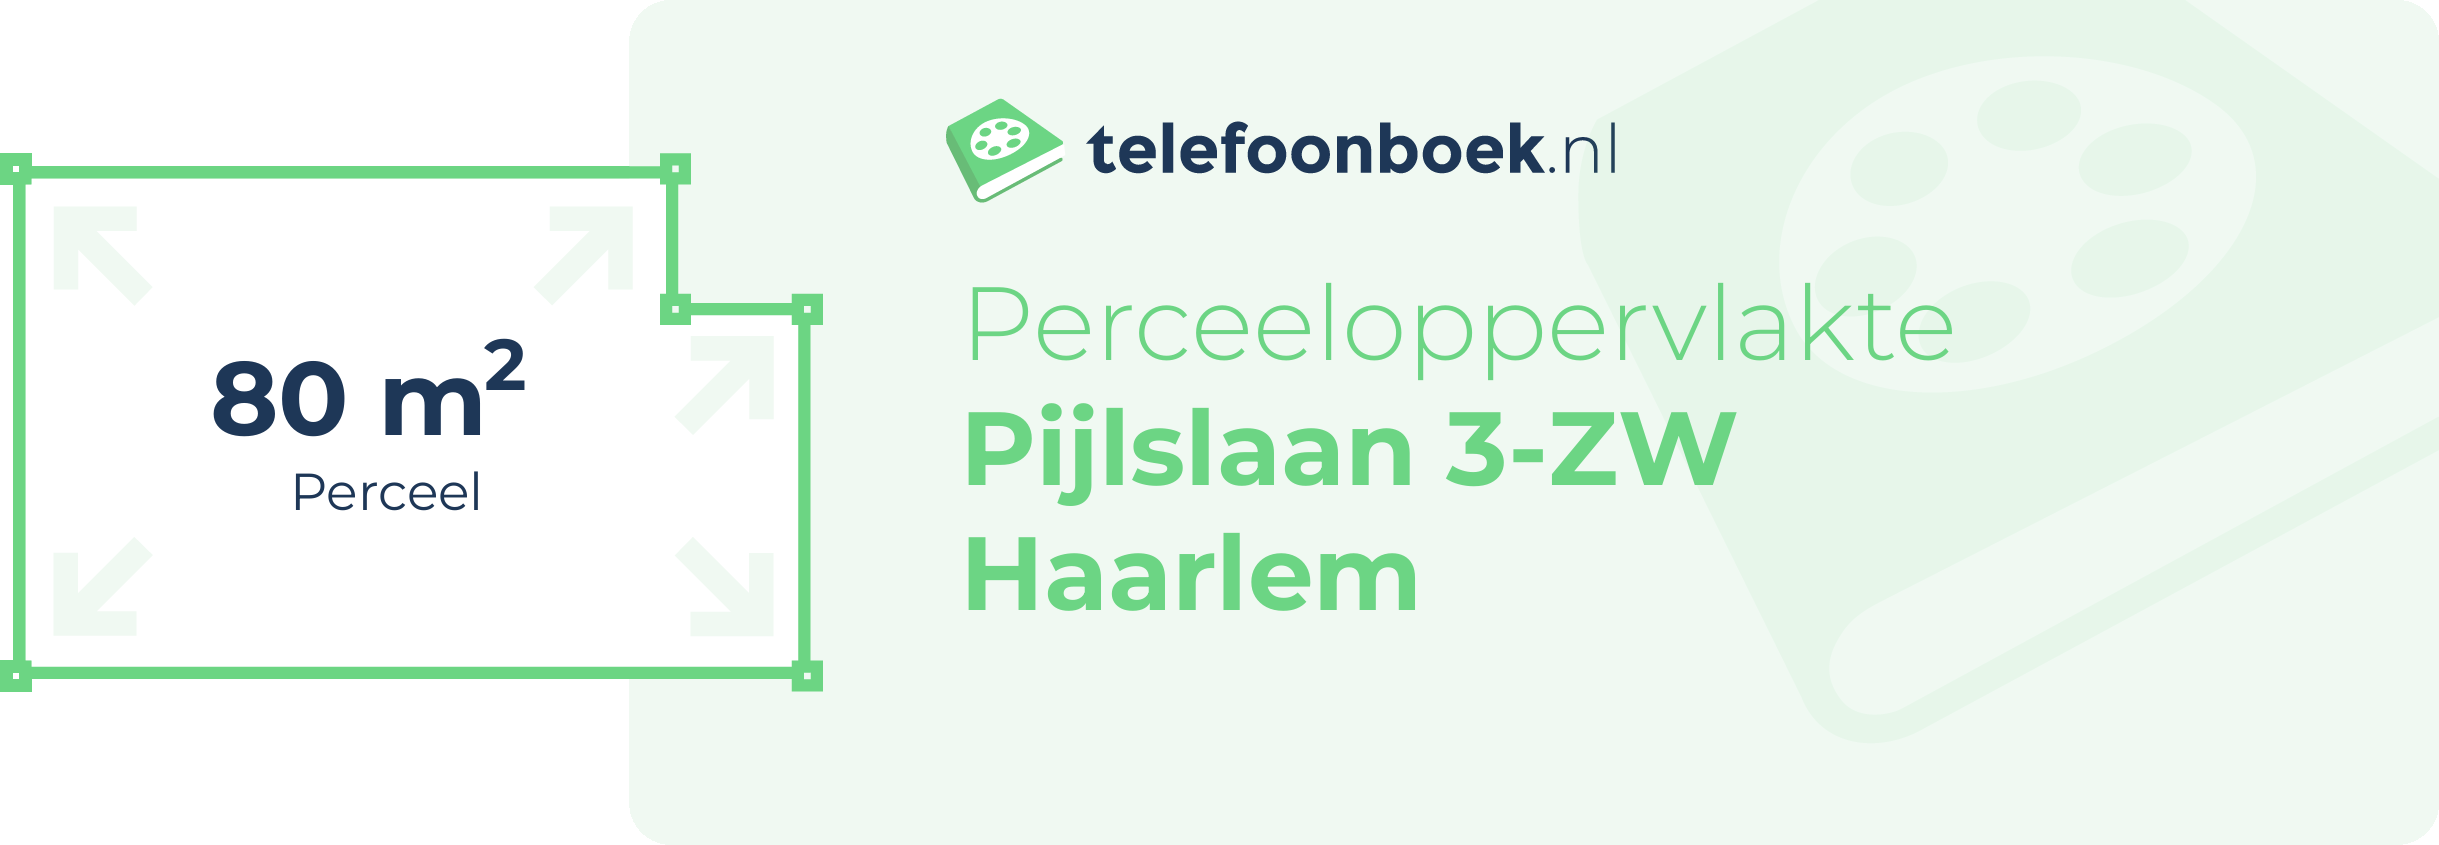 Perceeloppervlakte Pijlslaan 3-ZW Haarlem